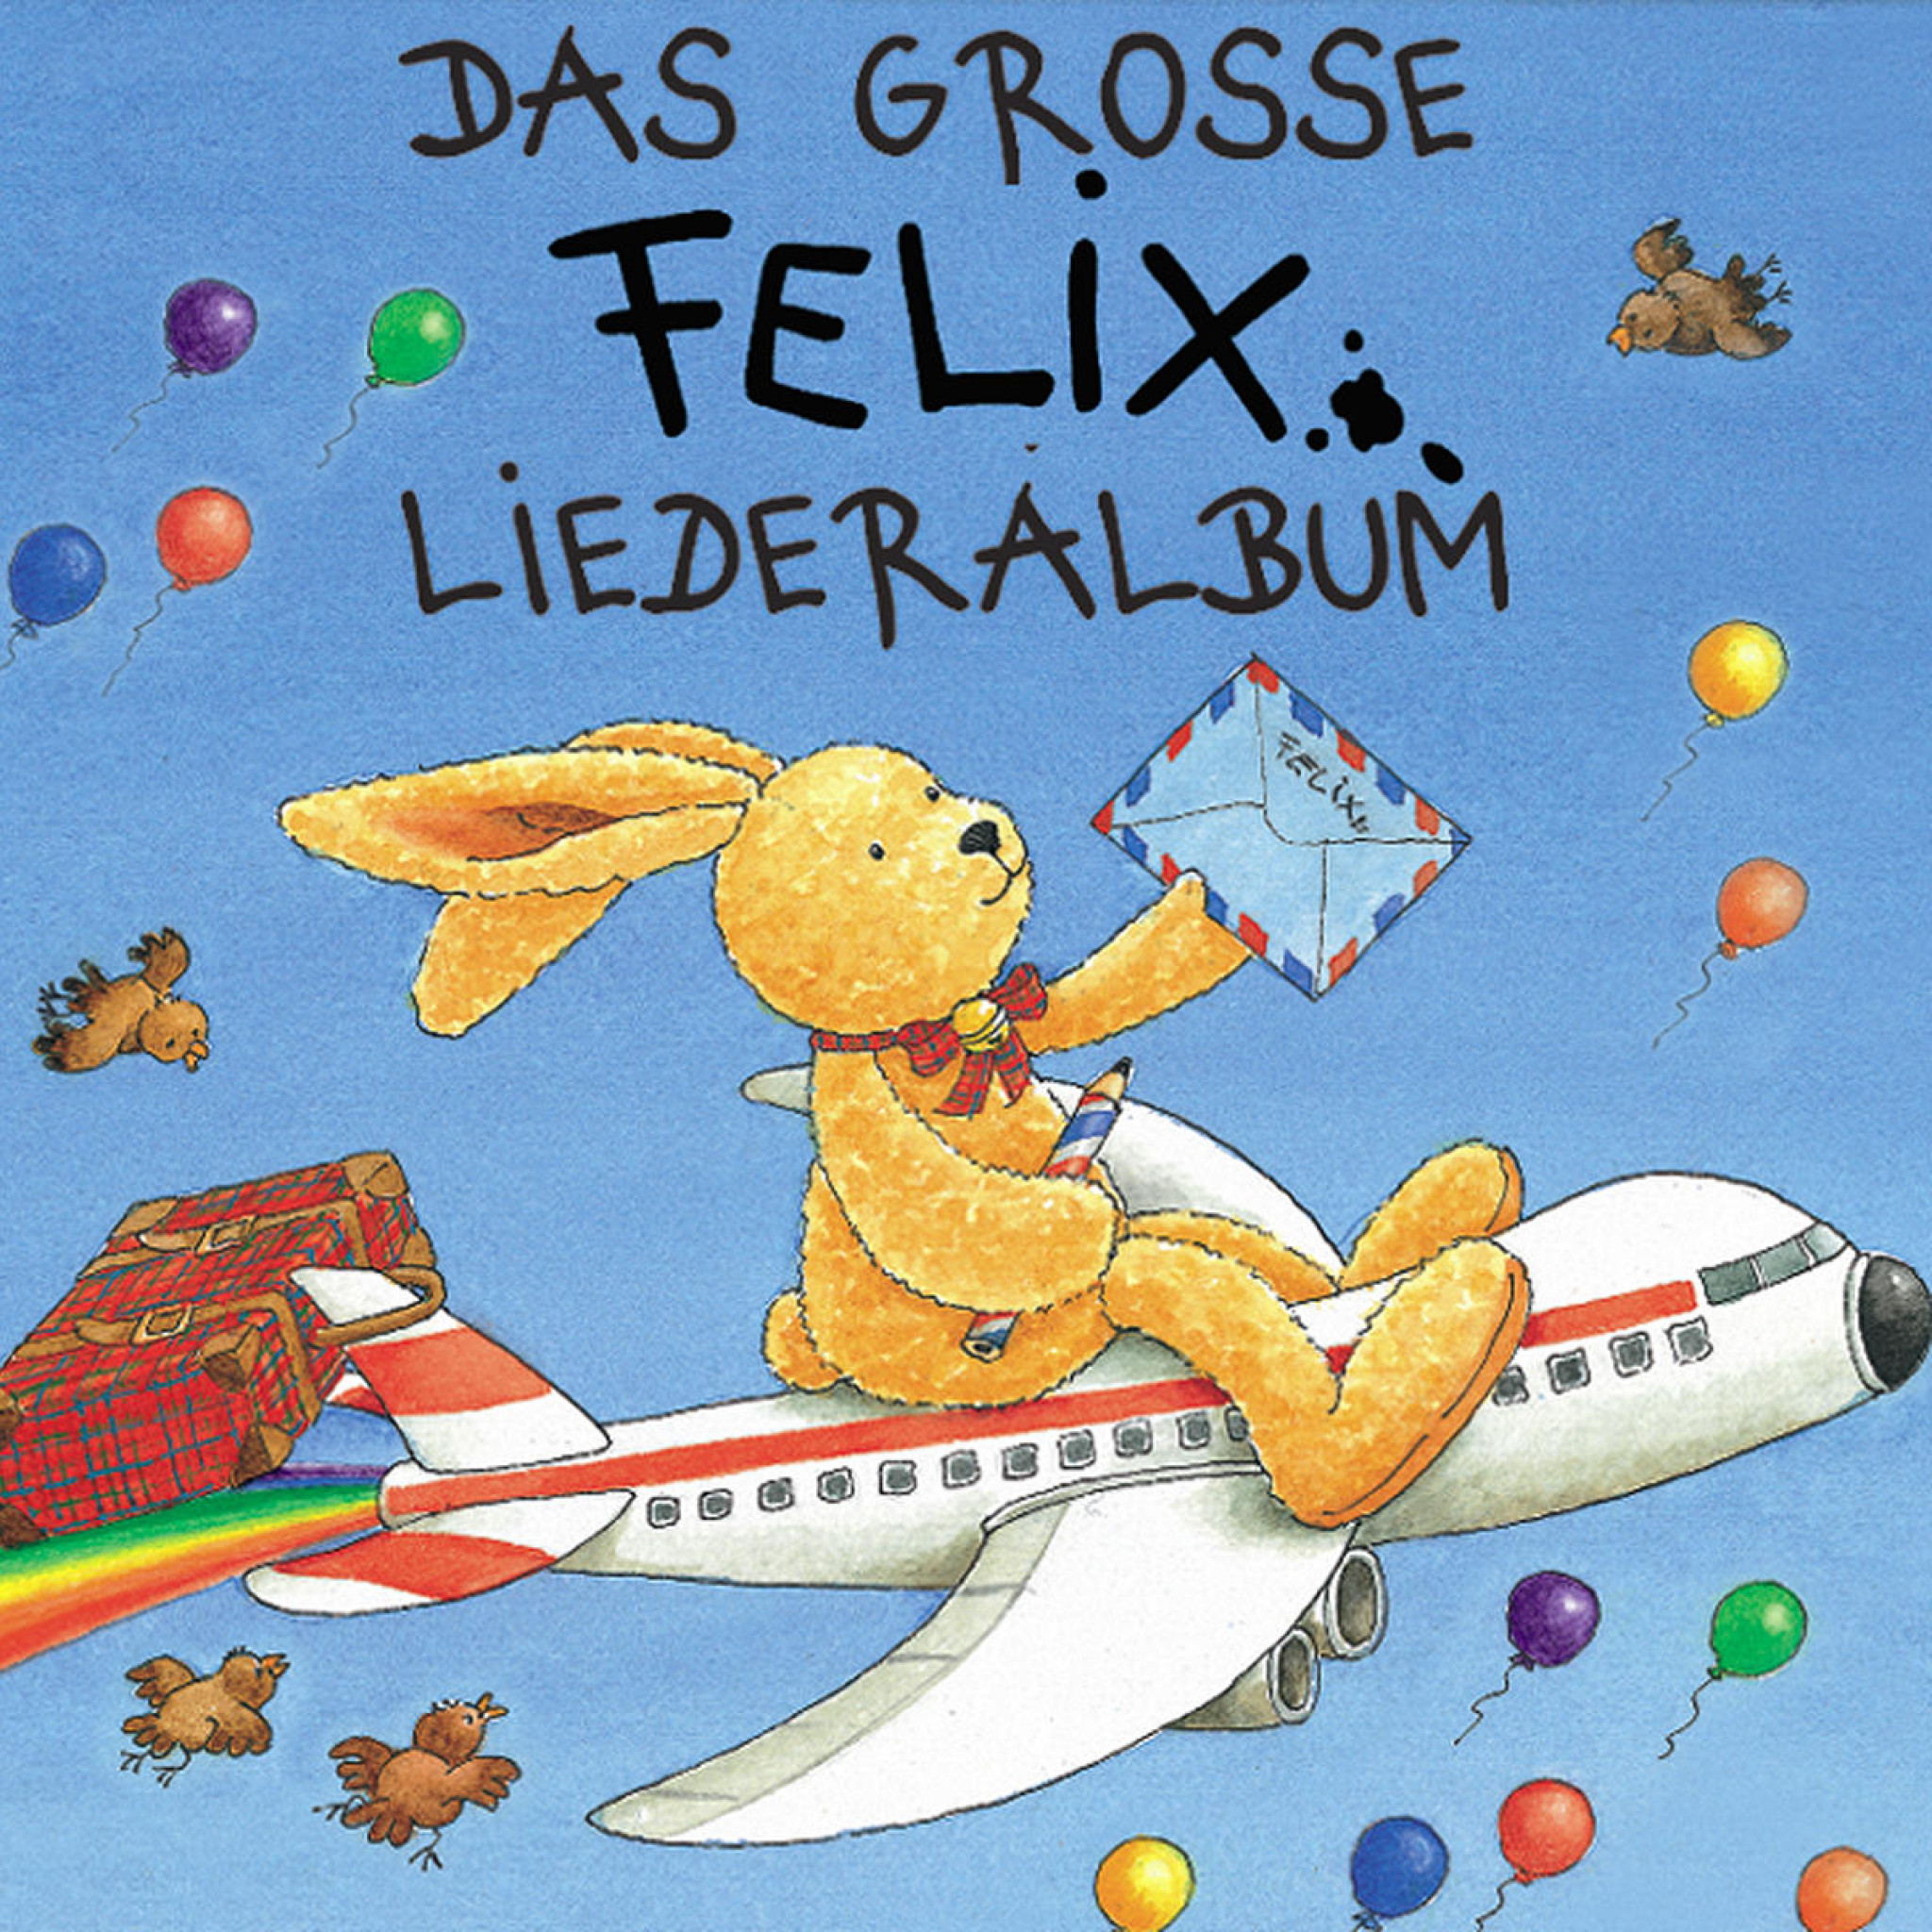 Das große Felix-Liederalbum 0731454496922